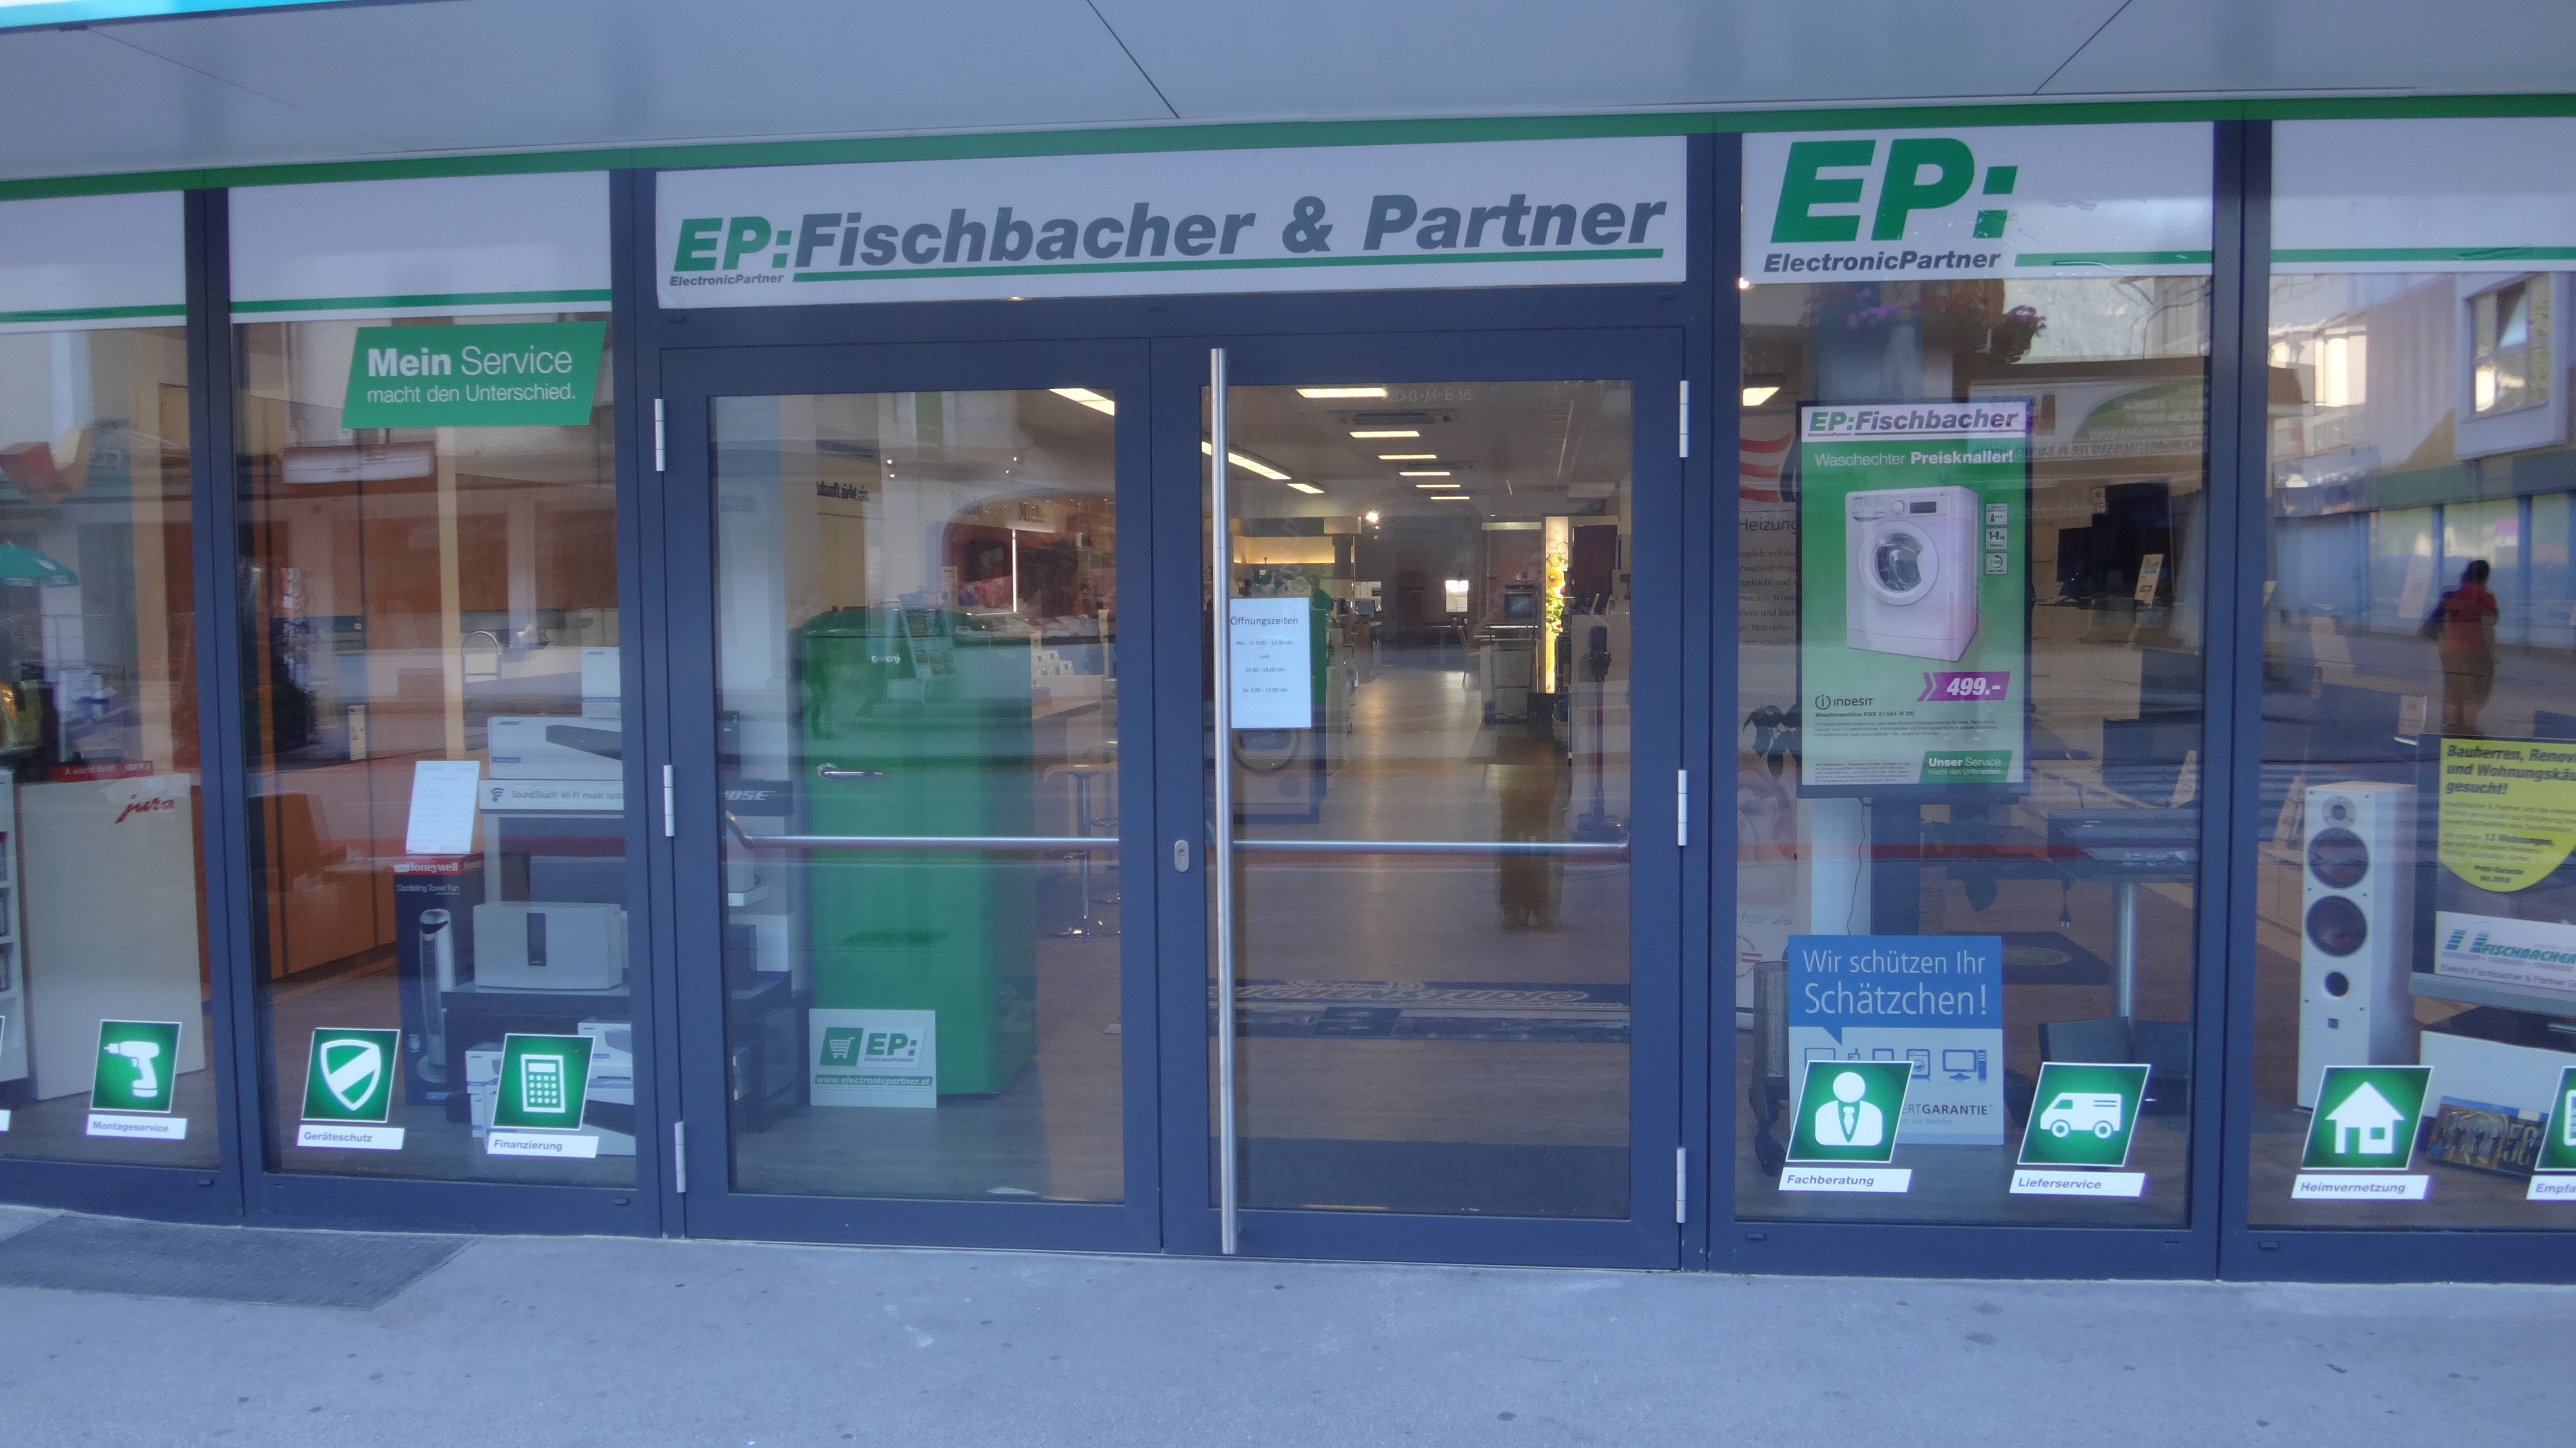 Bilder EP:Fischbacher & Partner